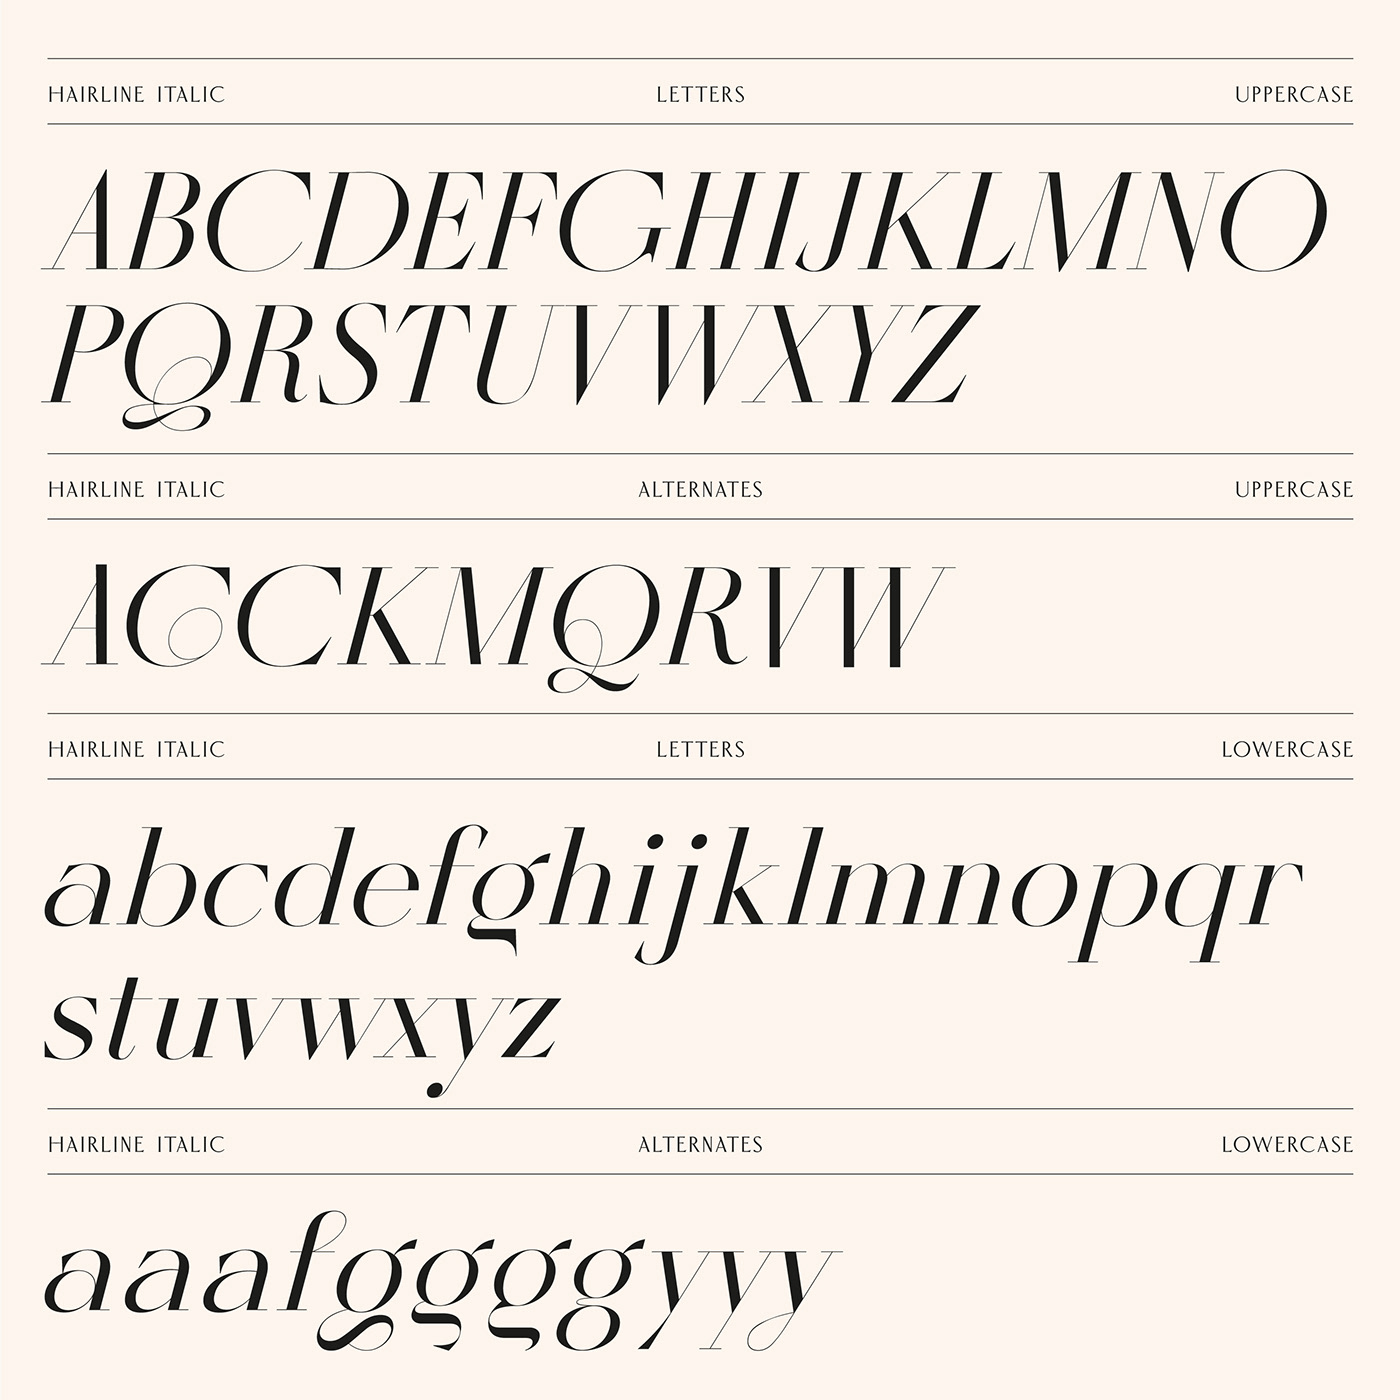 Fashion  font design Magazine design magazine layout Typeface typography   beauty logo fashion logo Logotype